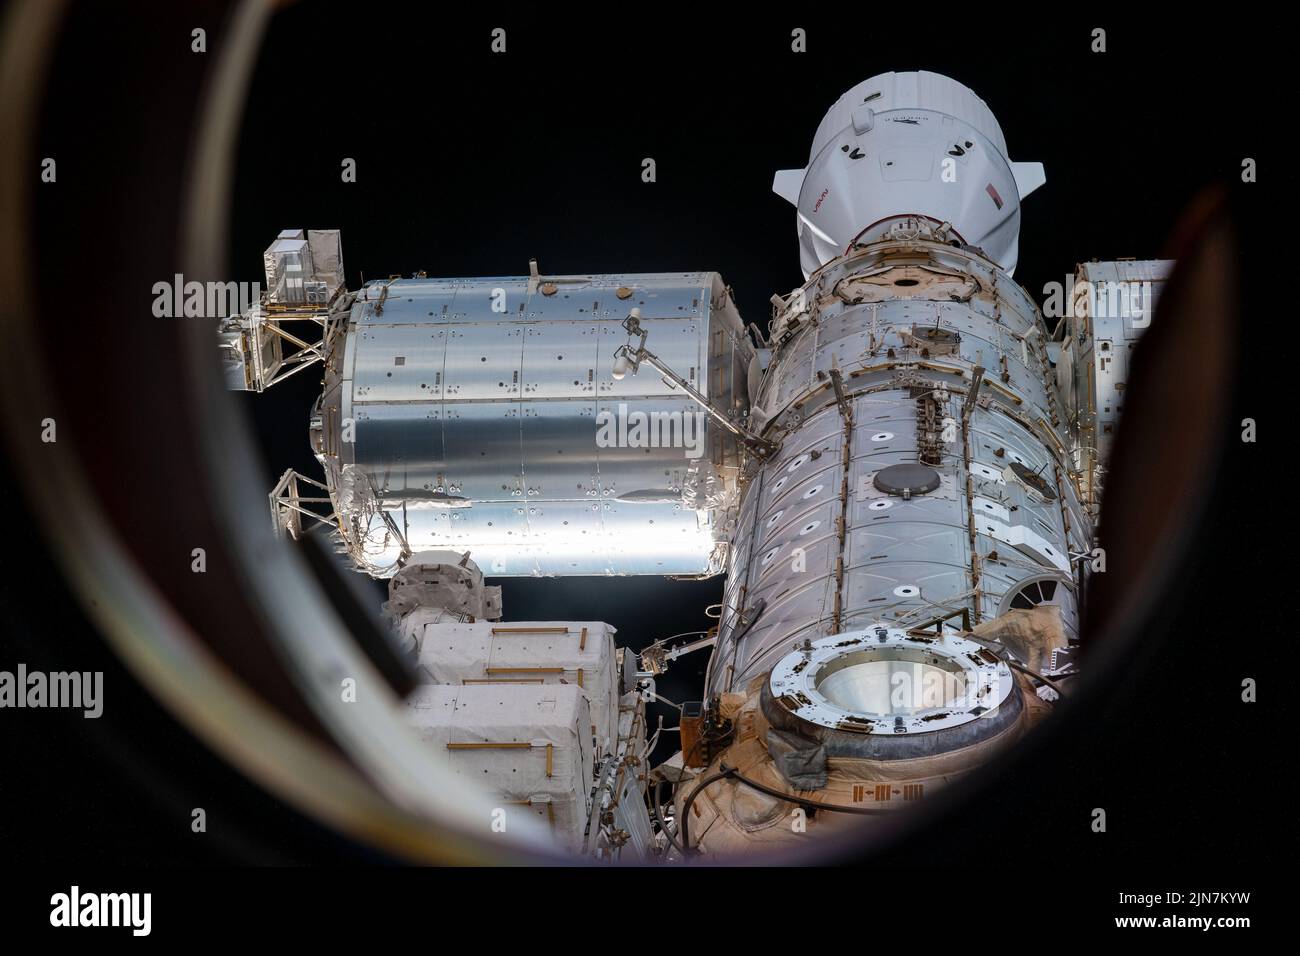 Atmósfera de la Tierra. 2nd de Ago de 2022. Esta vista de la Estación Espacial Internacional desde una ventana en el segmento ruso del laboratorio en órbita muestra partes del puerto de acoplamiento del módulo Rassvet, el módulo del laboratorio Destino de los Estados Unidos, el módulo Harmony, el módulo del laboratorio Columbus y el módulo del laboratorio Kibo. Acoplado a Harmony en la parte superior, se encuentra la nave de reabastecimiento SpaceX Dragon. Crédito: Noticias en vivo de NASA/ZUMA Wire/ZUMAPRESS.com/Alamy Foto de stock